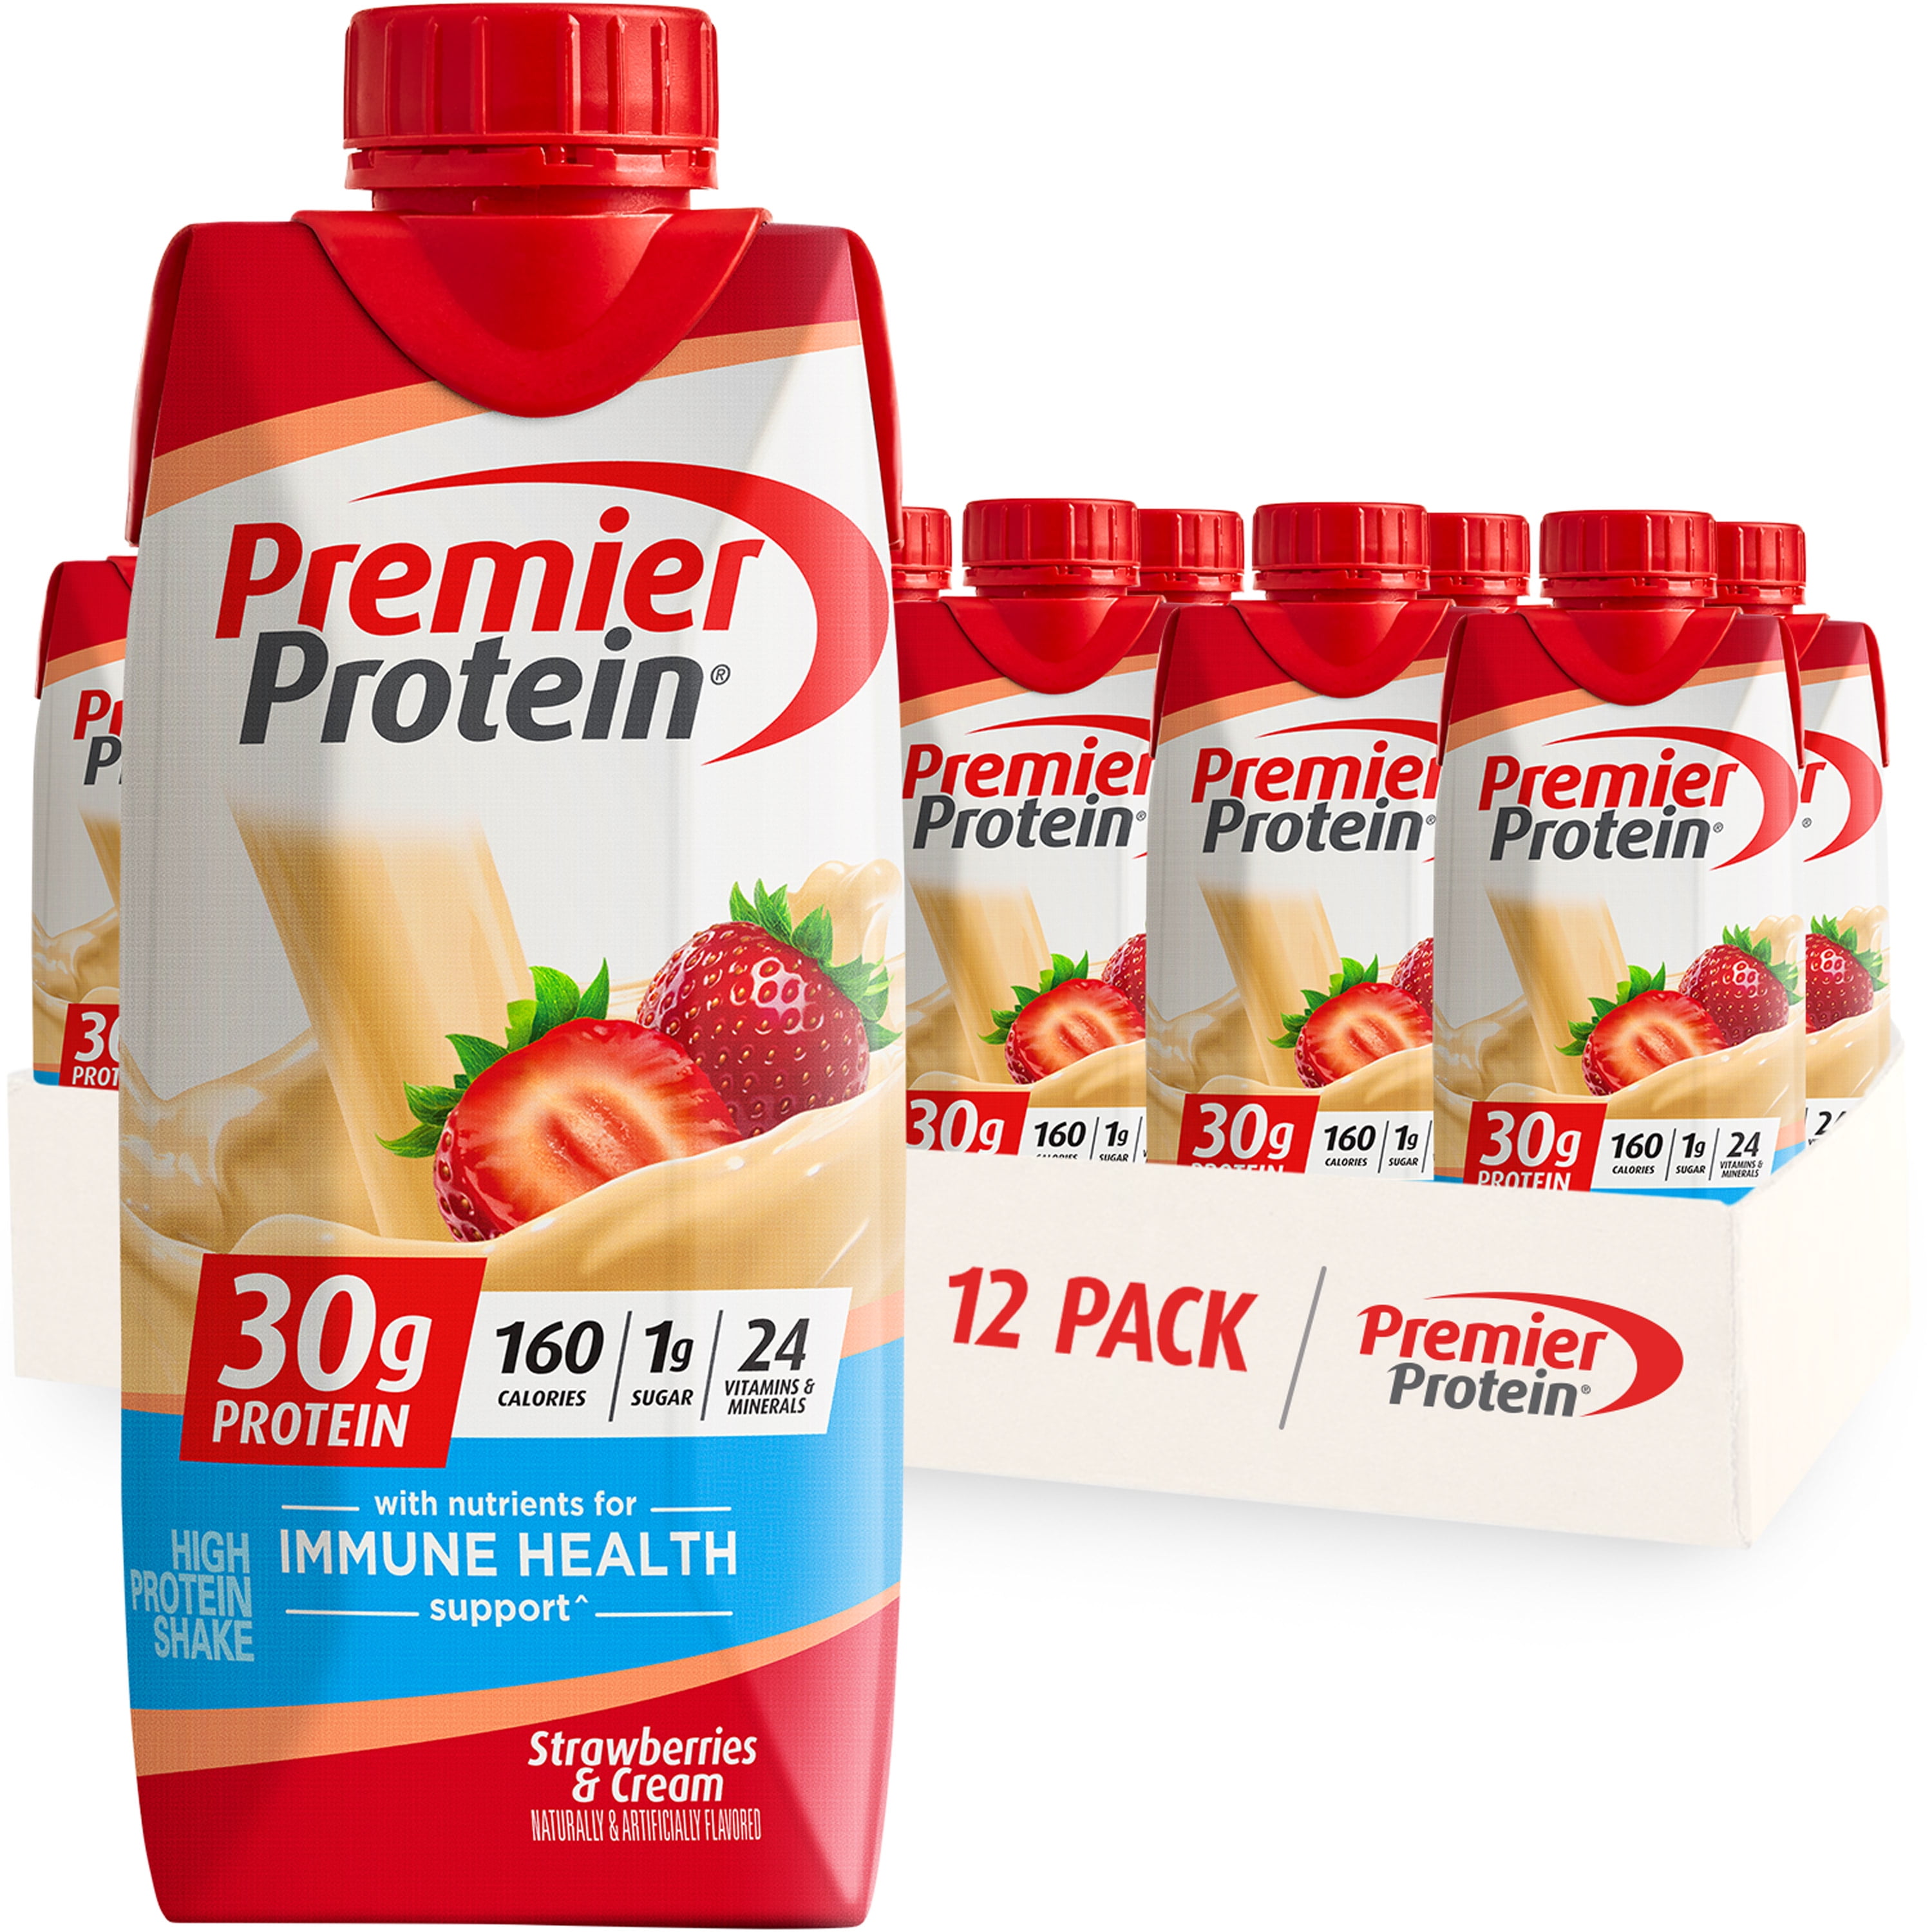 Premier Protein Shake, Chocolate Peanut Butter Liquid, 30g Protein, 1g  Sugar, 24 Vitamins & Minerals, Nutrients to Support Immune Health, gluten  free